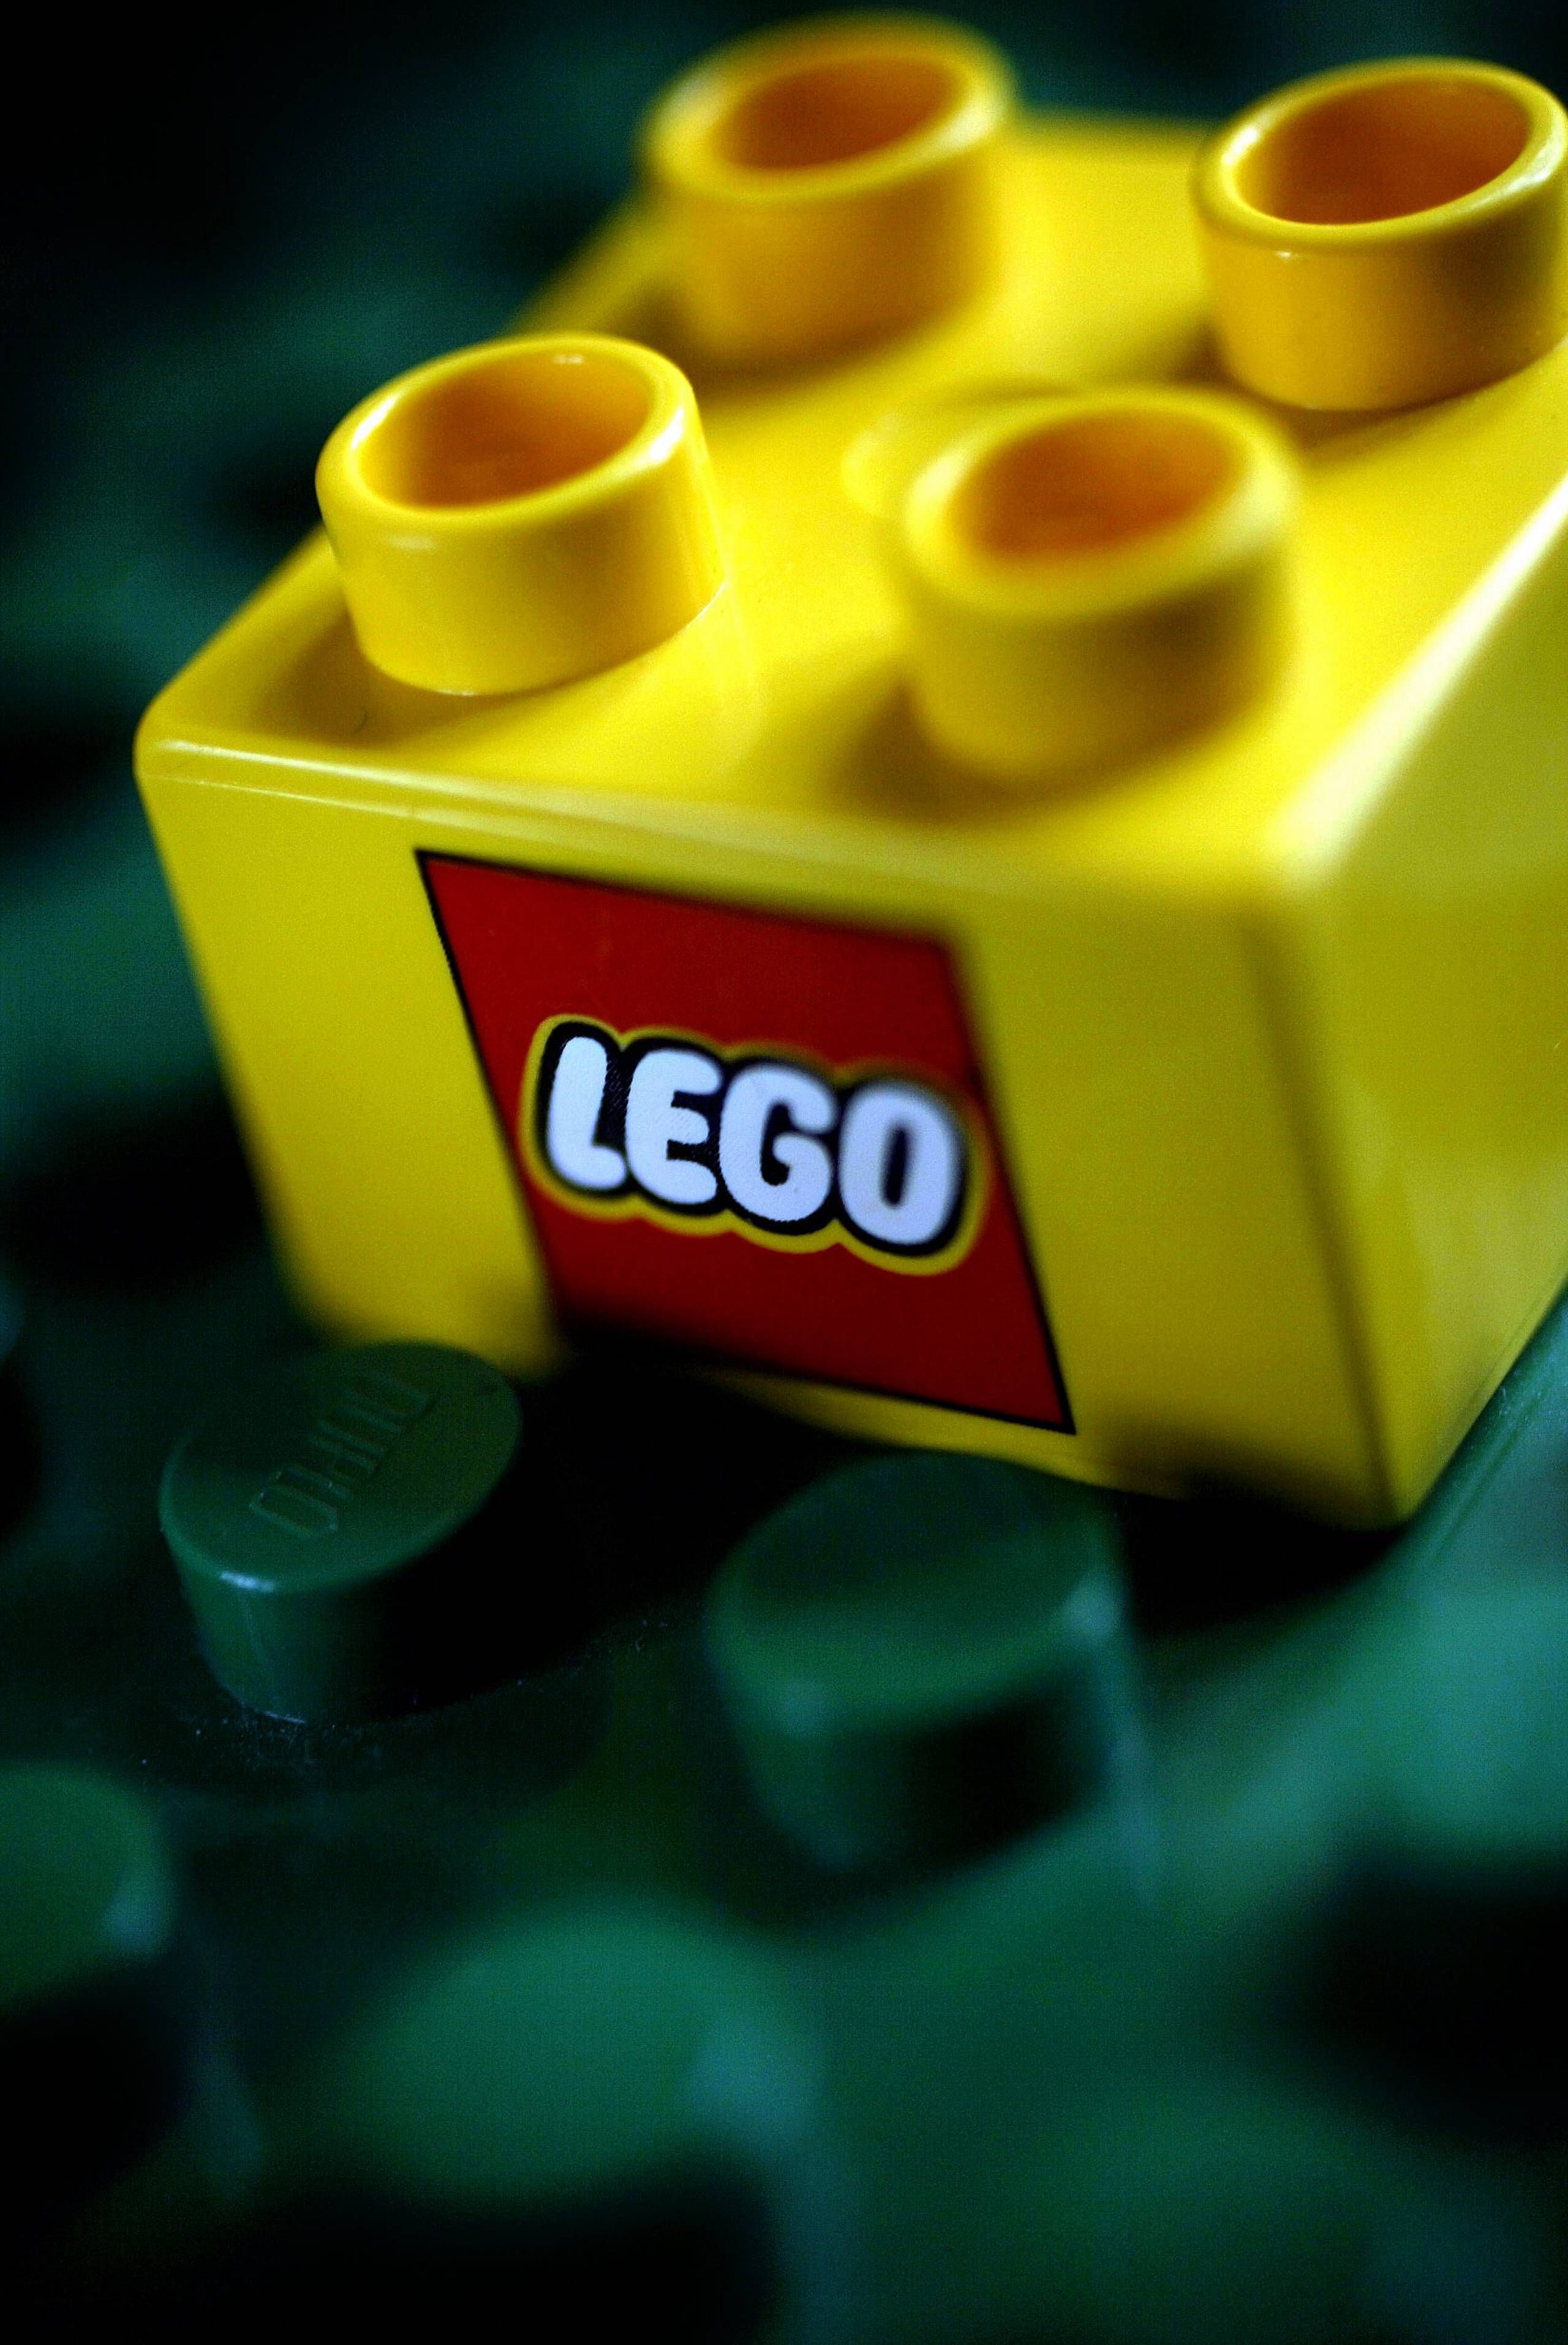 Lego leverer regnskab: Så mange milliarder der i de populære klodser sidste år